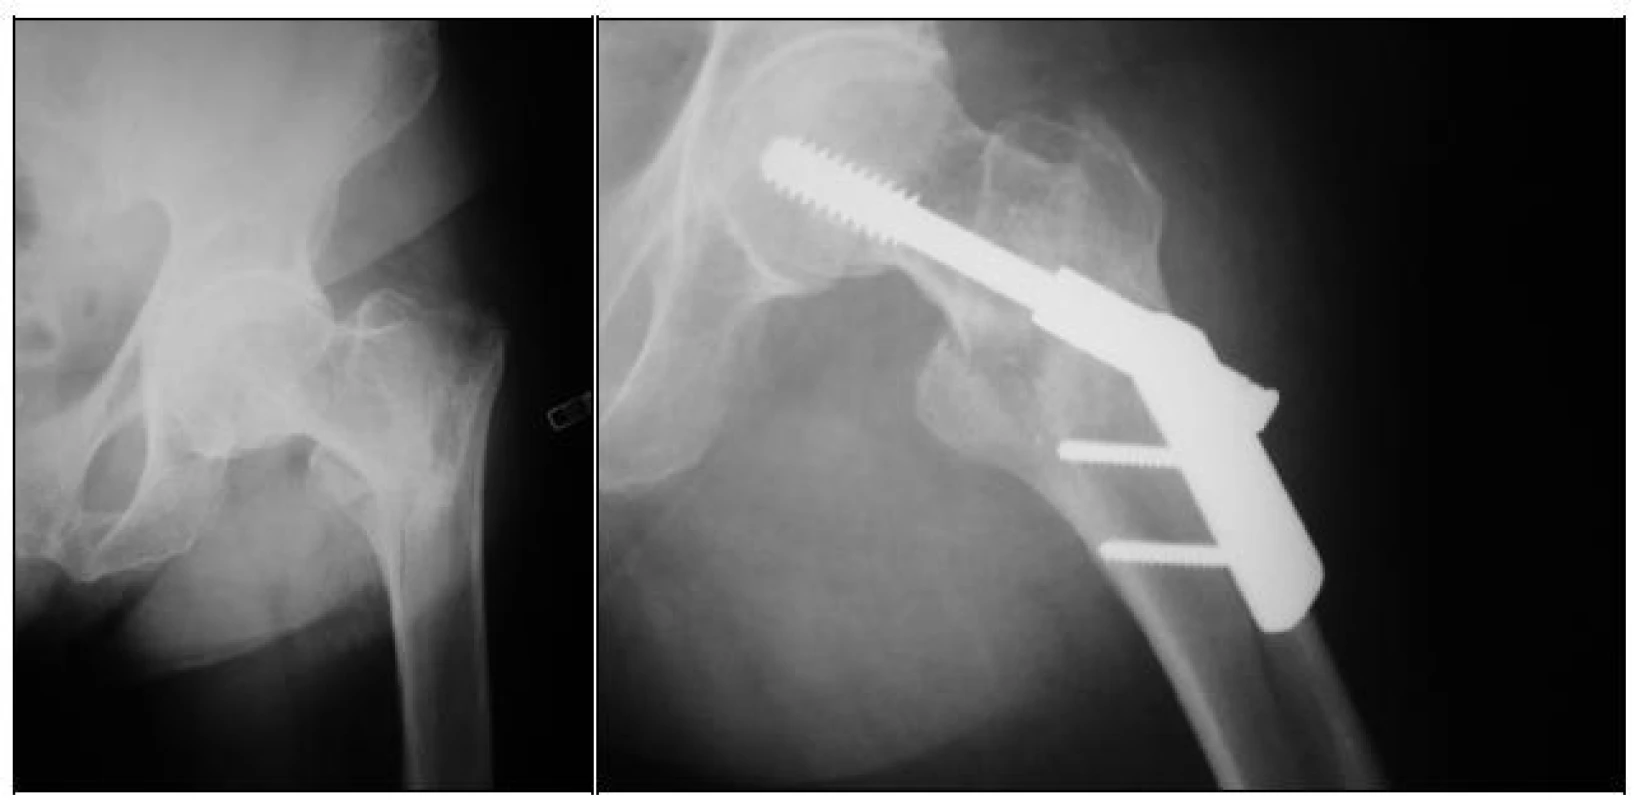 RTG dokumentace 76leté pacientky s primárně „podceněnou“ zlomeninou proximálního femuru, která zasahovala až pod úroveň malého trochanteru 
a - úrazový snímek
b - stav po osteosyntéze 2otvorovou DHS dlahou, patrná linie lomu distálně pod dlahou